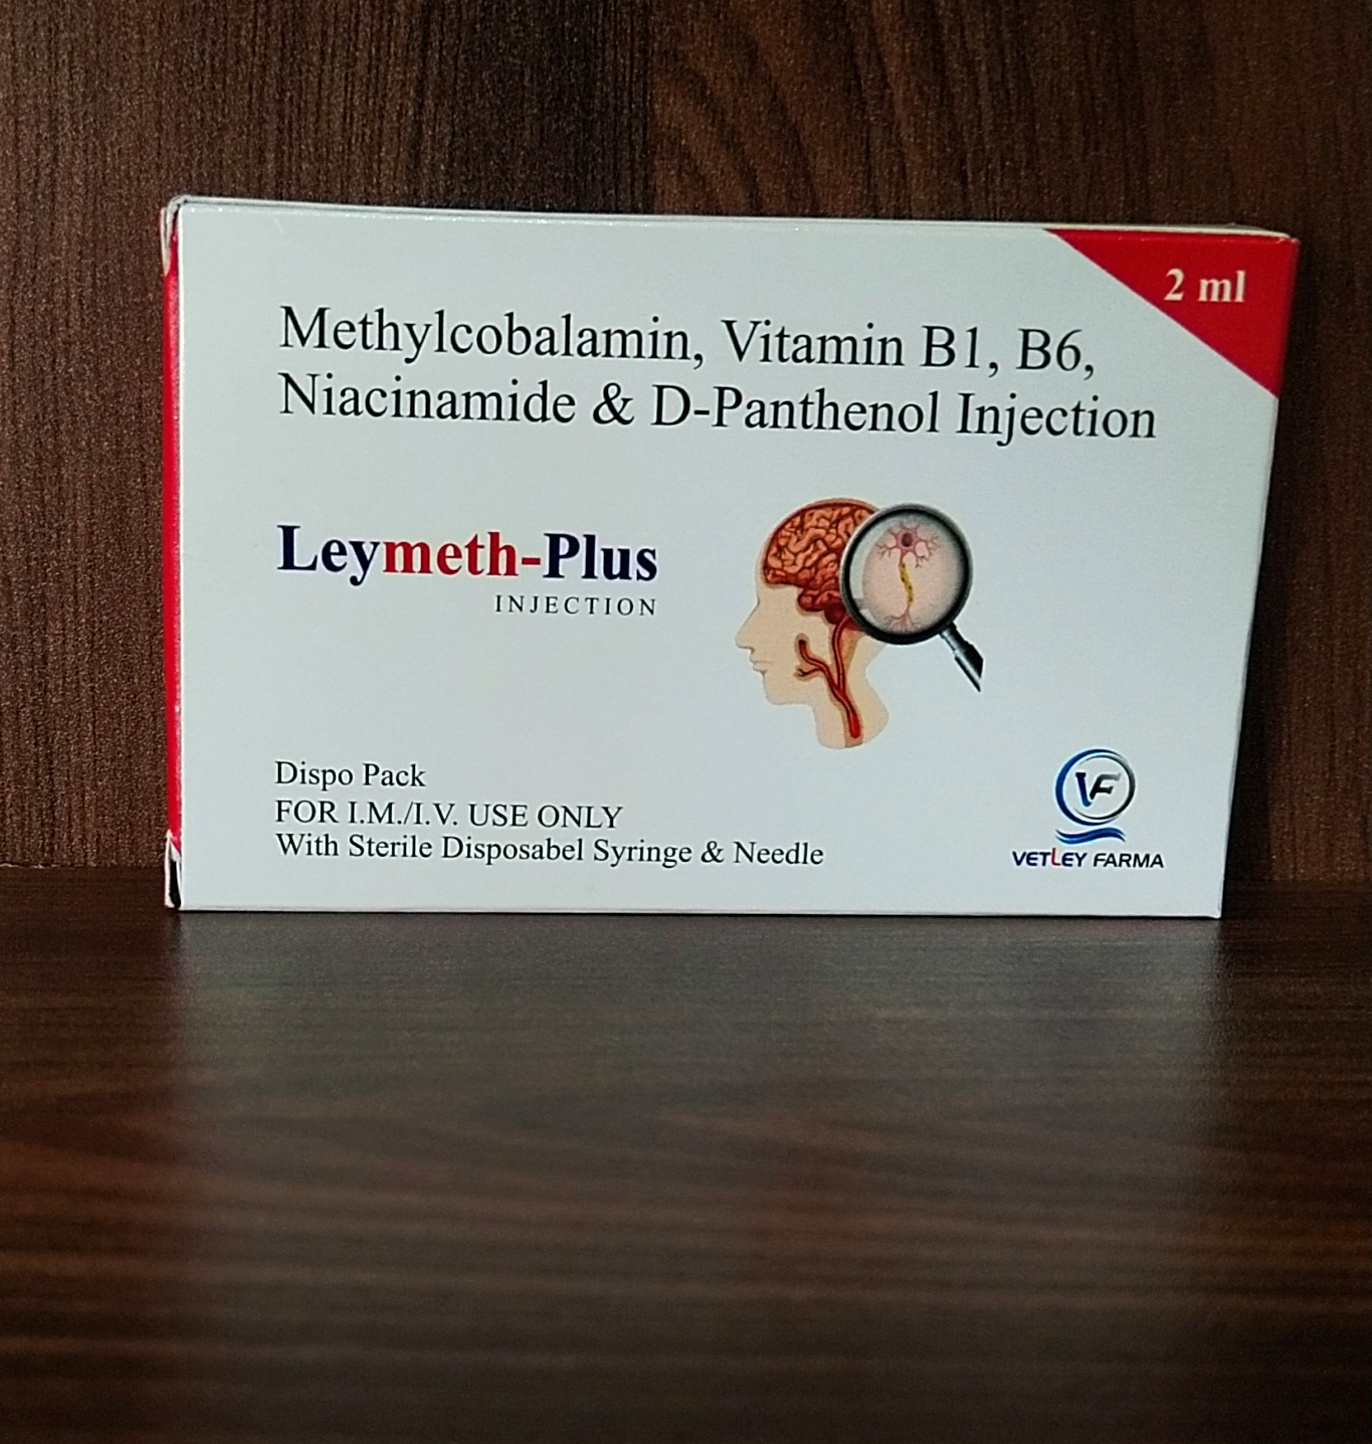 Methylcobalamin injection